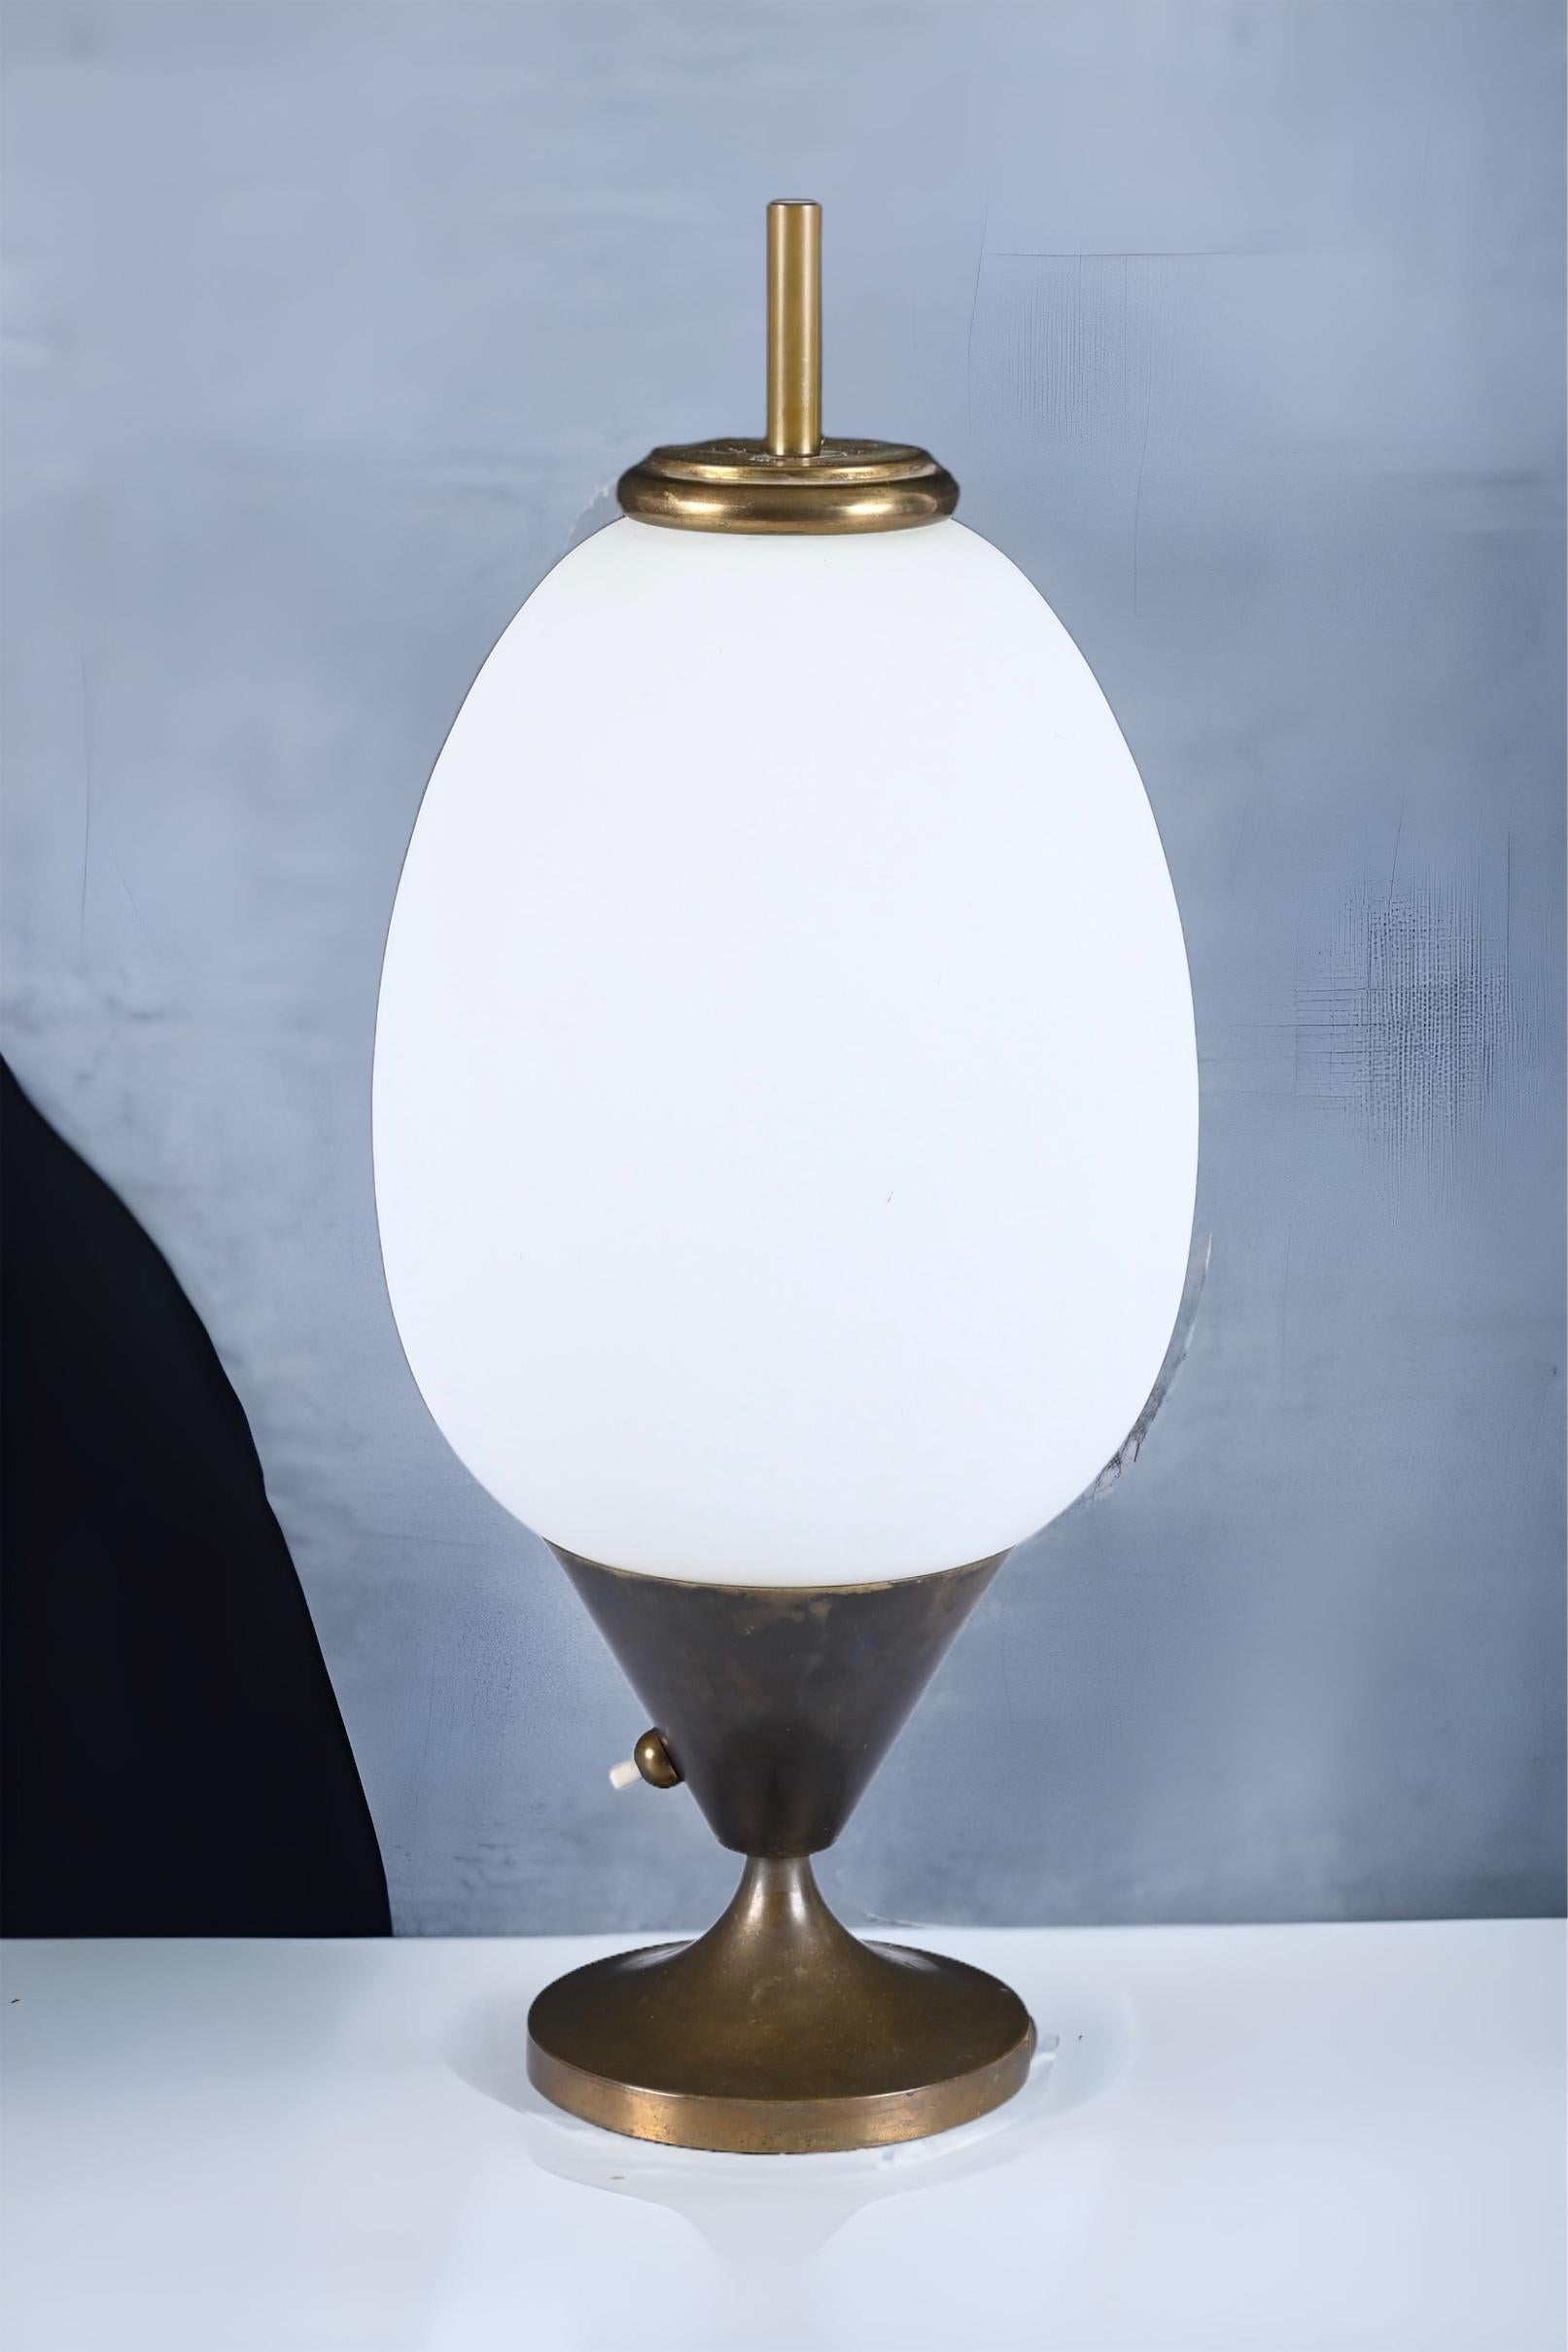 Superbe grande lampe de table ovoïde en laiton et verre opalin. Cette pièce unique a été conçue en Italie dans les années 1950.

La lampe est tout simplement étonnante en raison de ses lignes iconiques et délicates et de sa magnifique patine